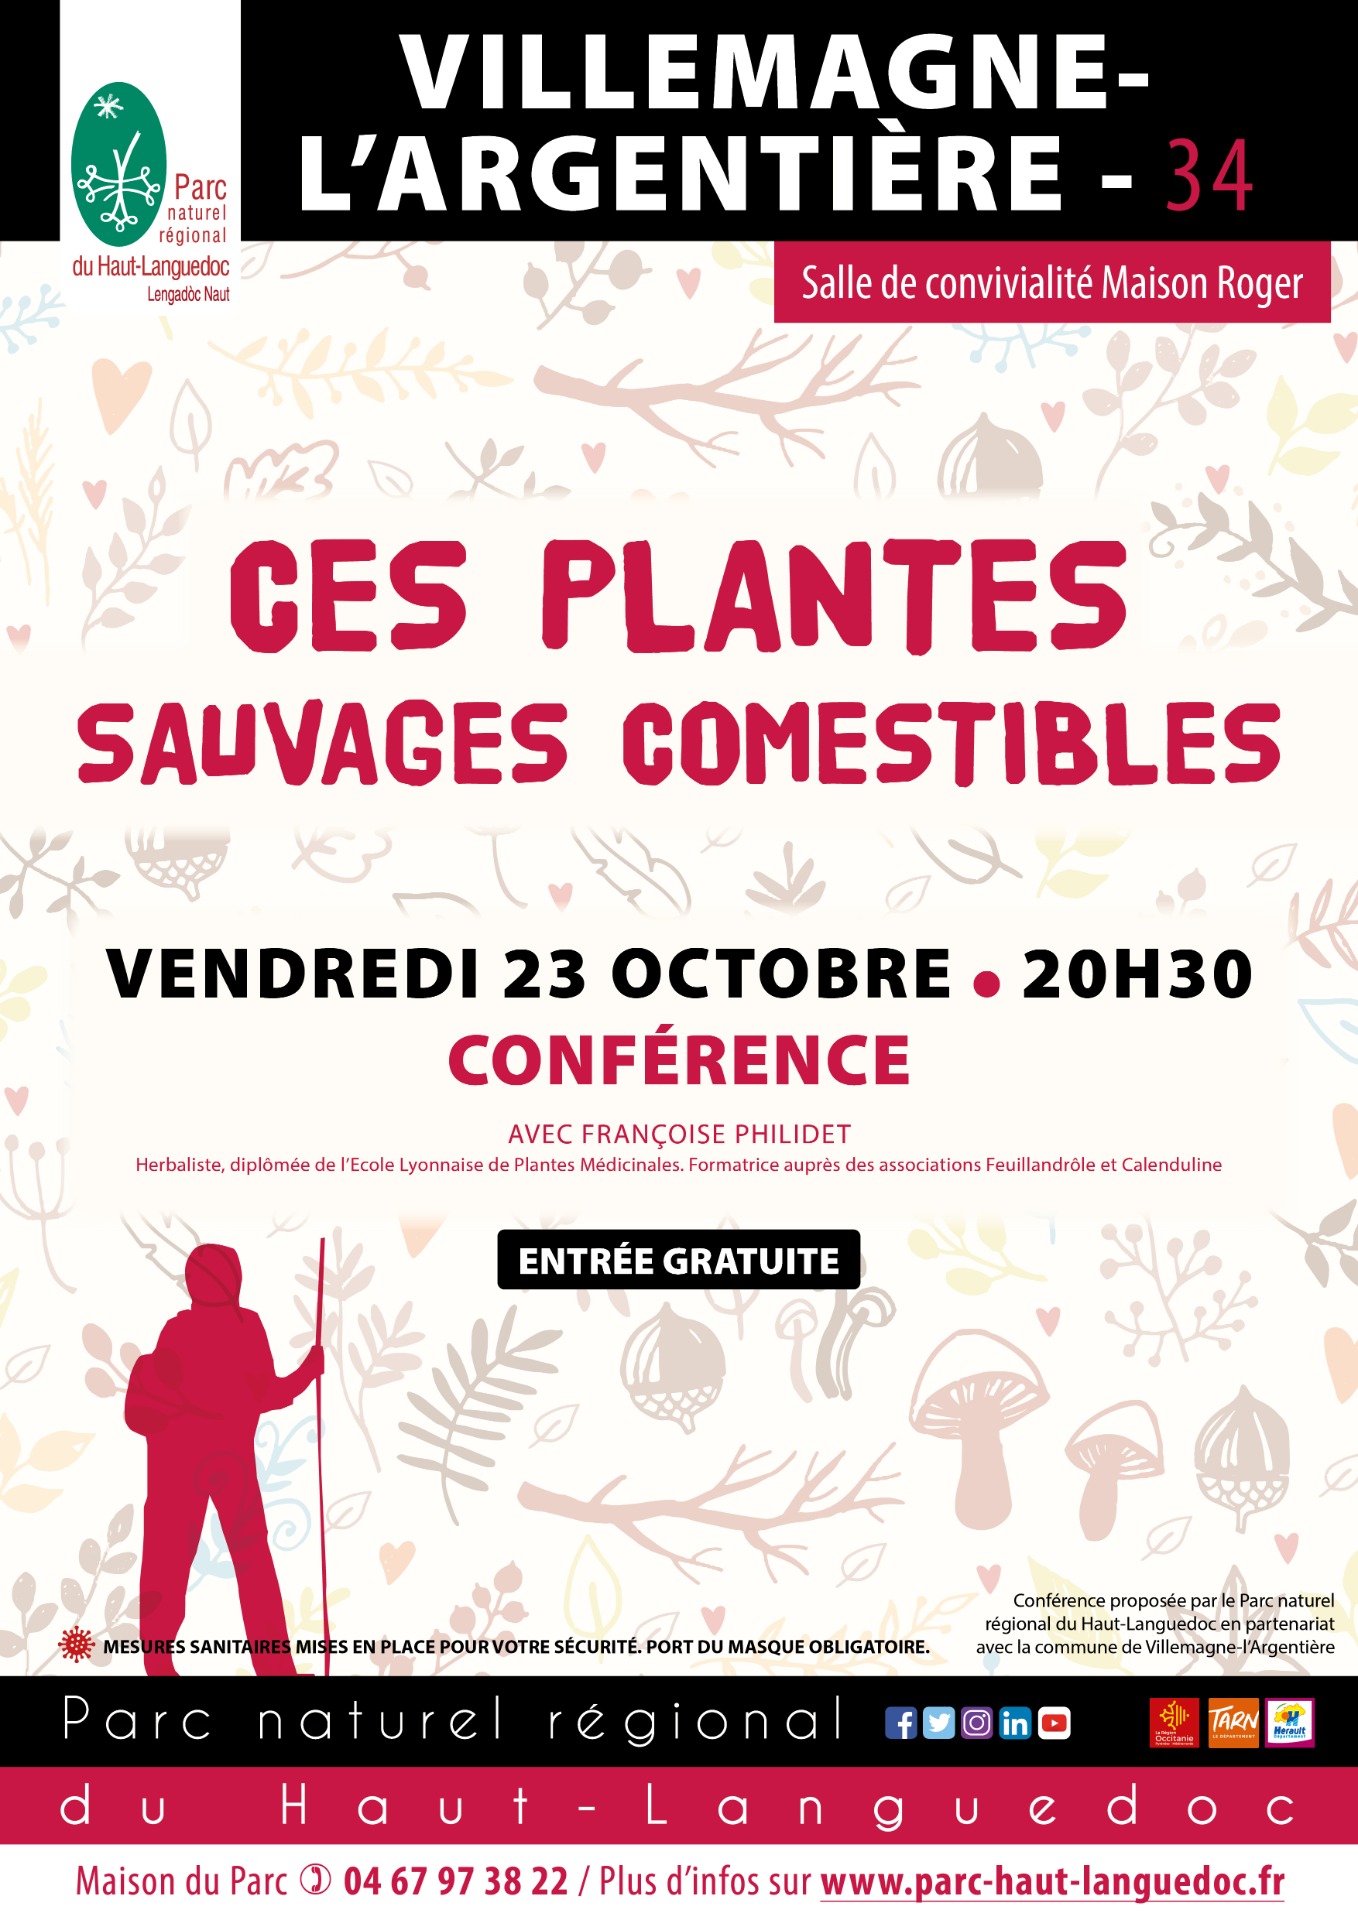 Affiche Conférence "Ces_plantes_sauvages_comestibles" organisée par le Parc naturel régional du Haut-Languedoc